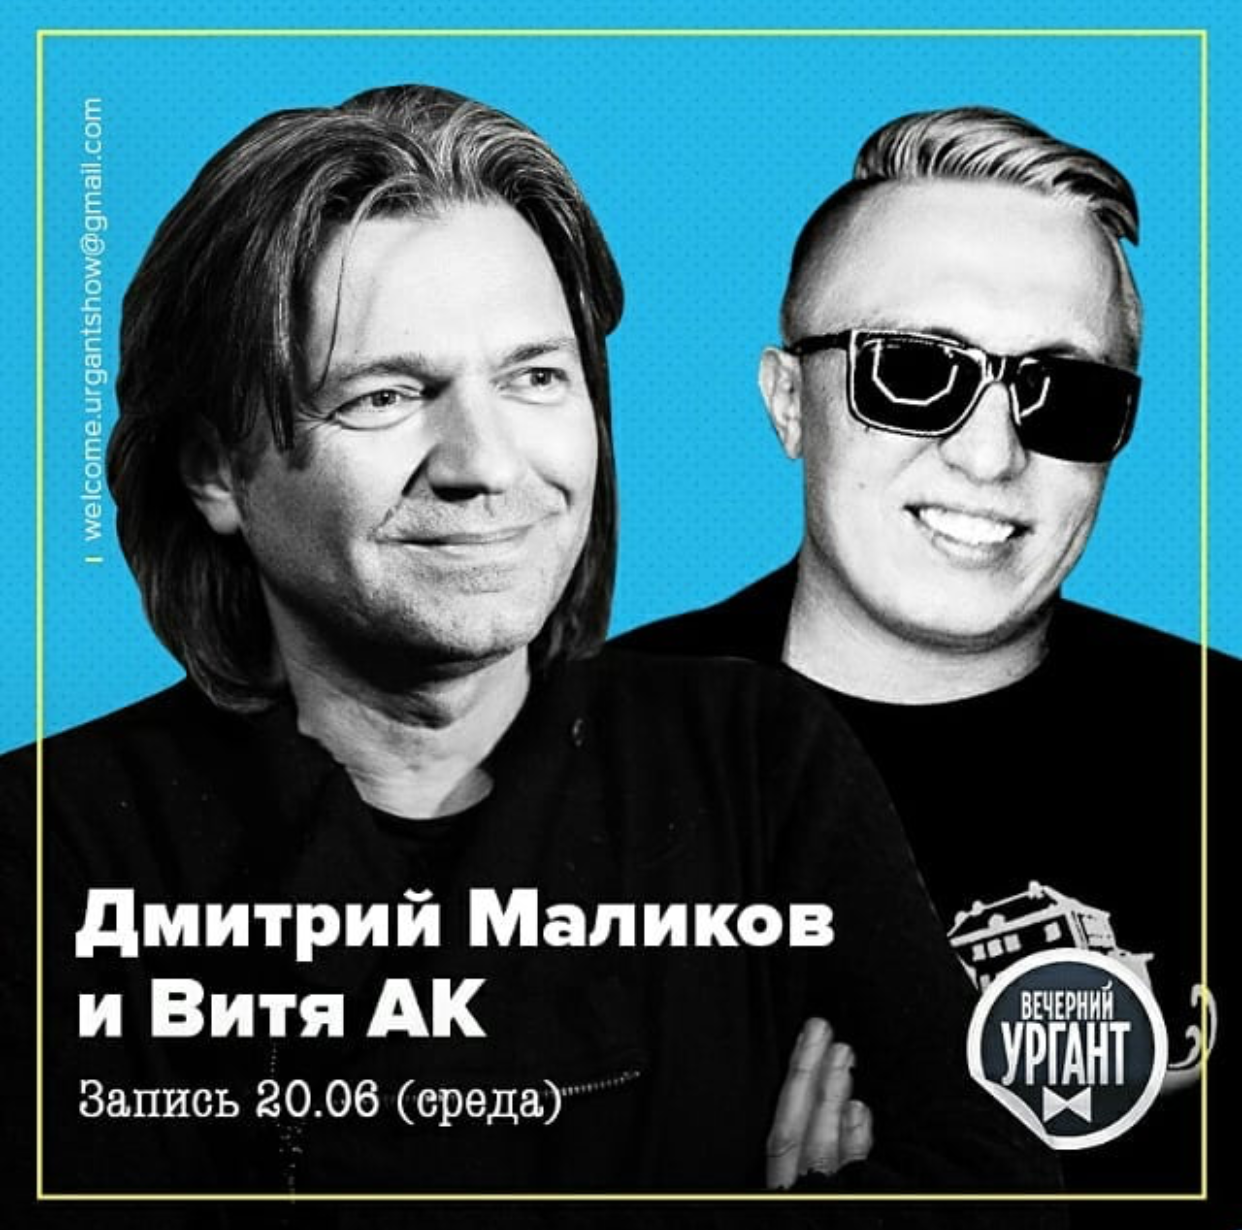 Дмитрий Маликов записал дуэт с Витей АК